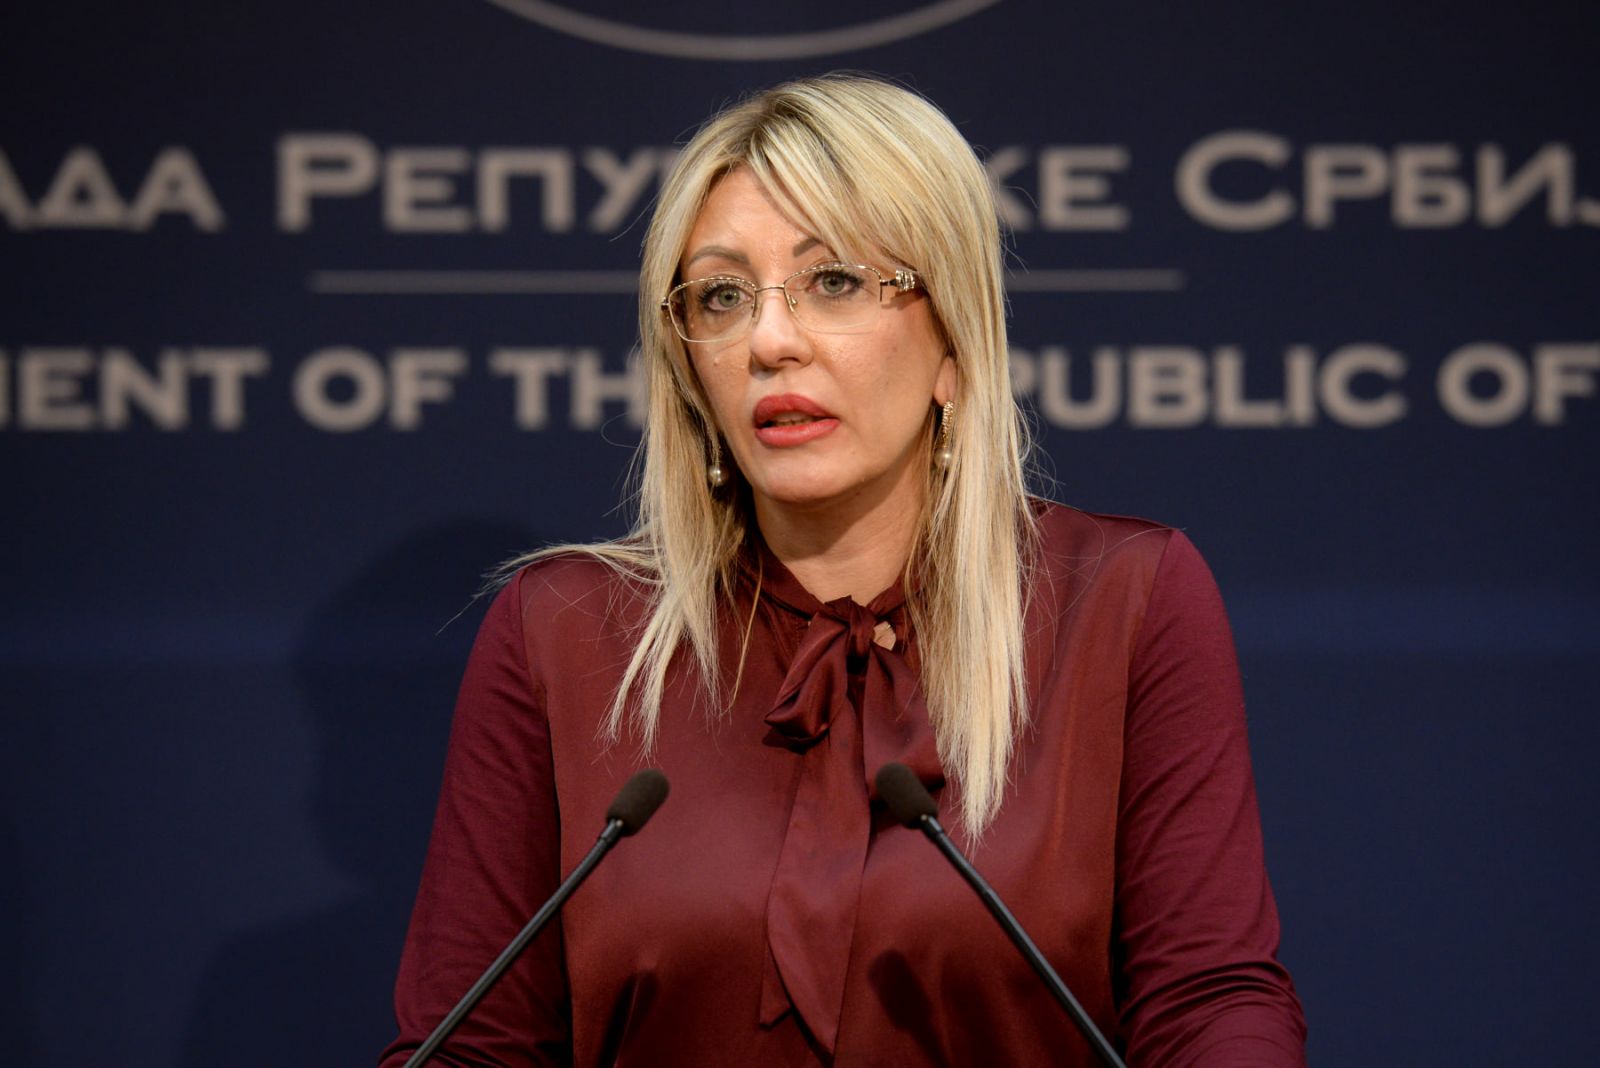 Ј. Јоксимовић: Реформа правосуђа наставиће се уз широке јавне консултације